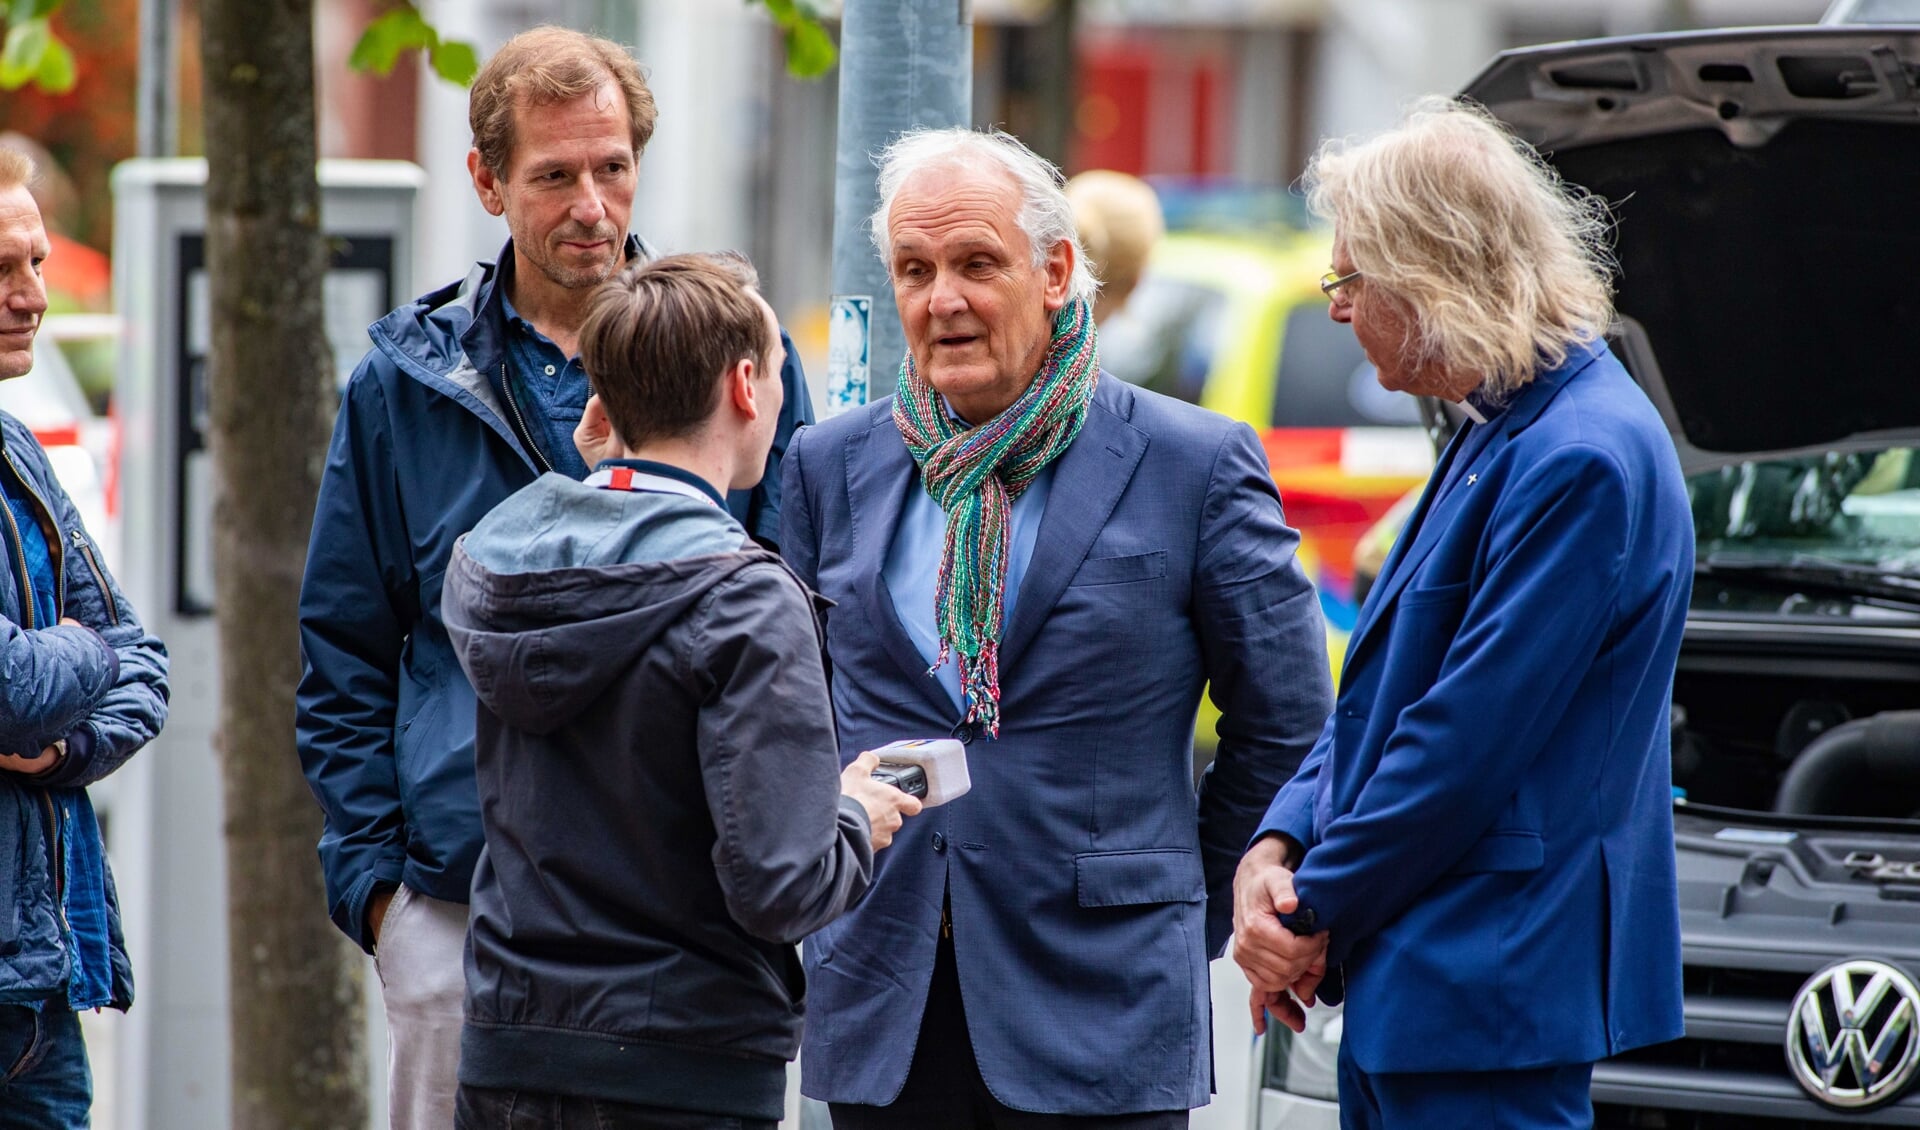 Burgemeester Pieter Broertjes en pastoor Jules Dresmé waren zondag op straat vanwege het onderzoek naar het verdachte pakketje.